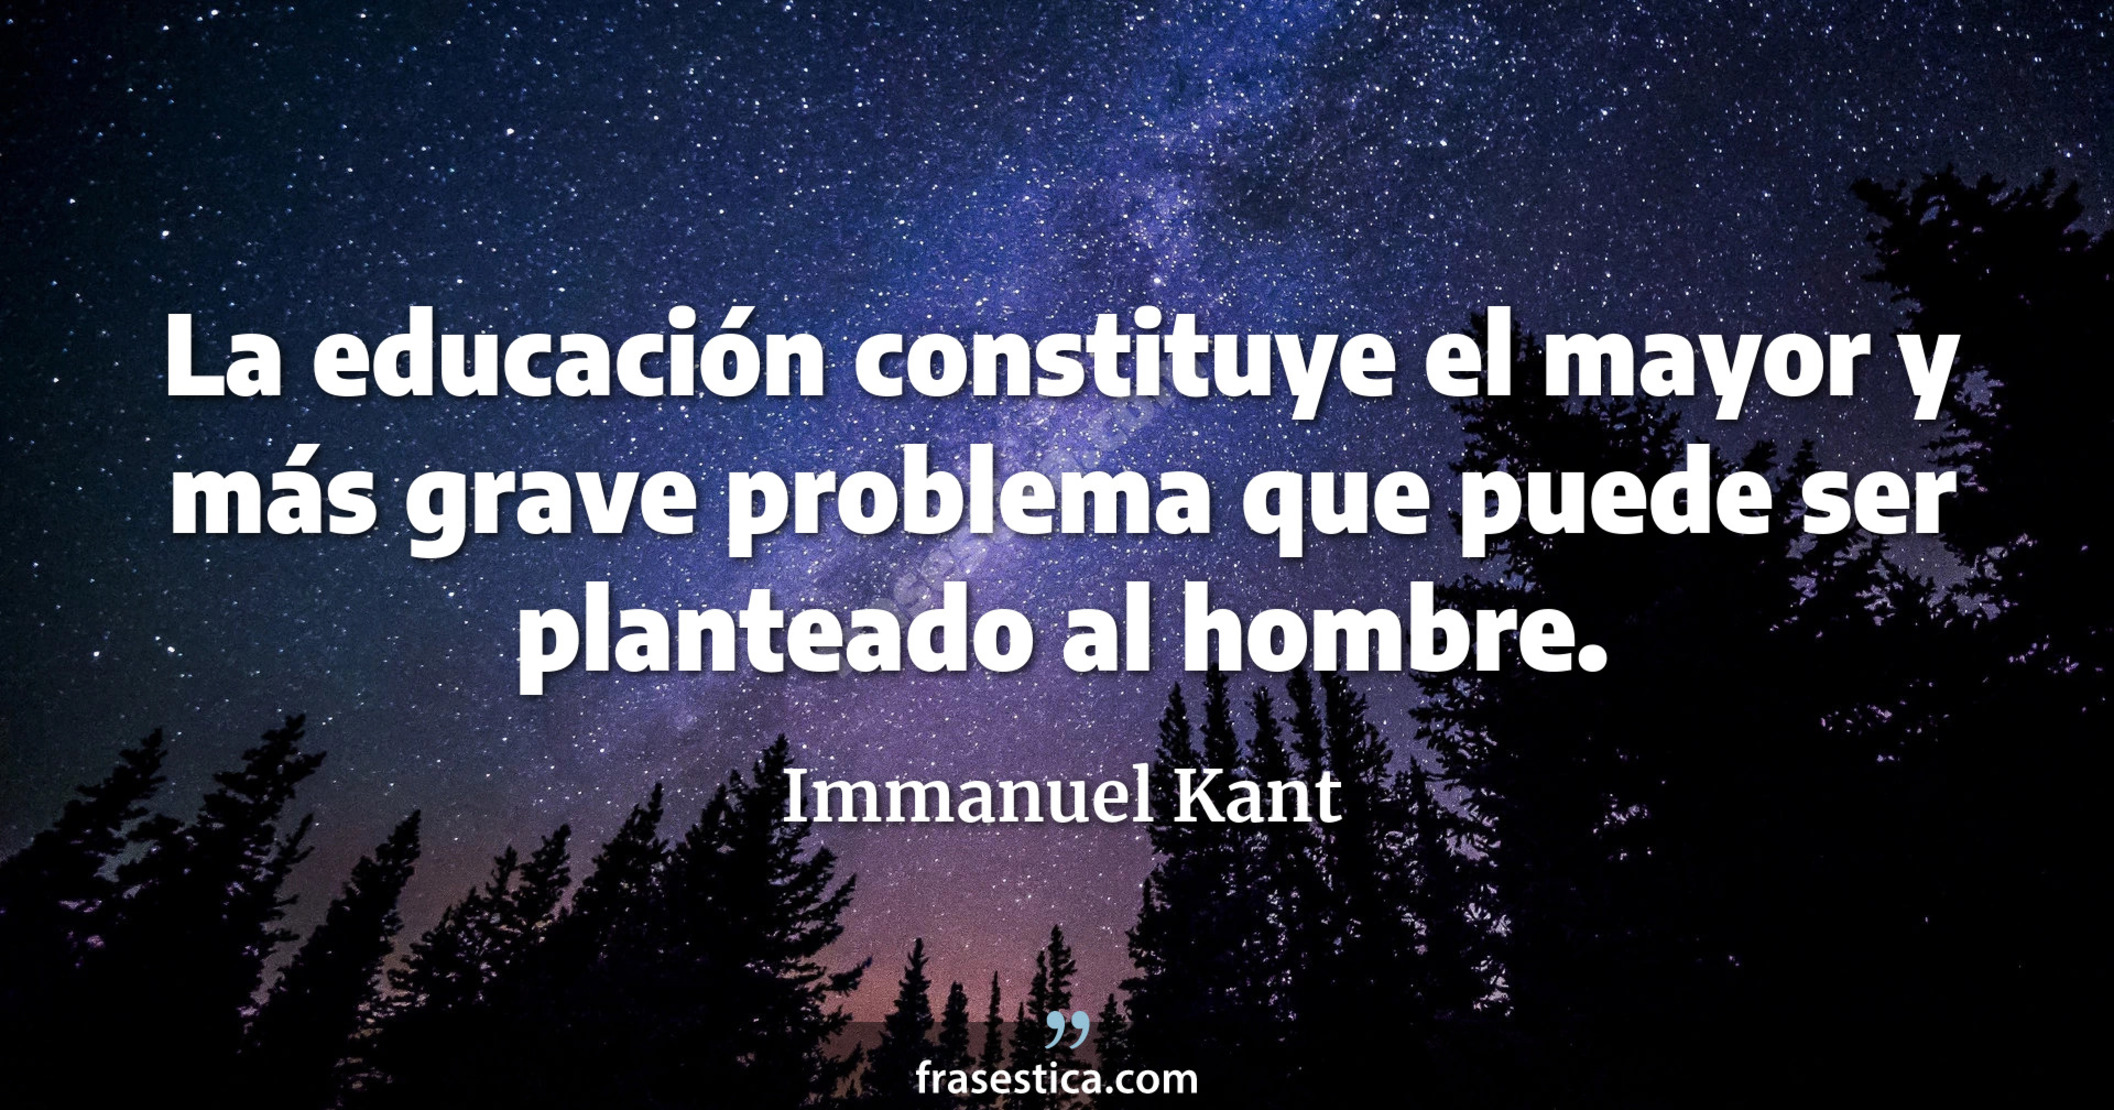 La educación constituye el mayor y más grave problema que puede ser planteado al hombre. - Immanuel Kant